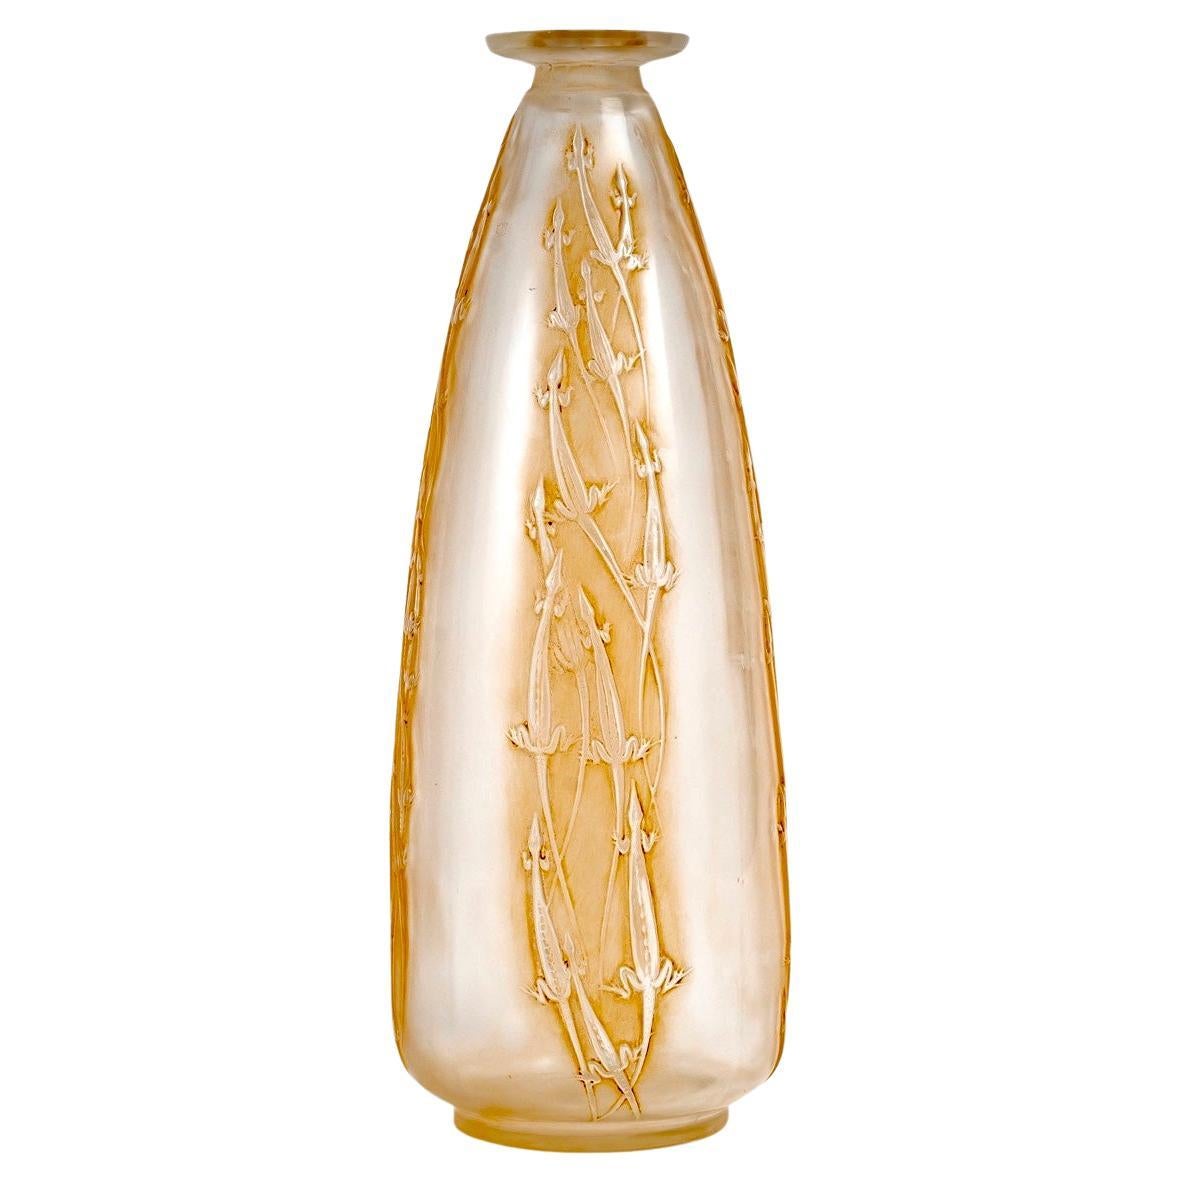 1912 Rene Lalique Vase Quatre Groupes de Lézards Frosted Glass with Sepia Patina